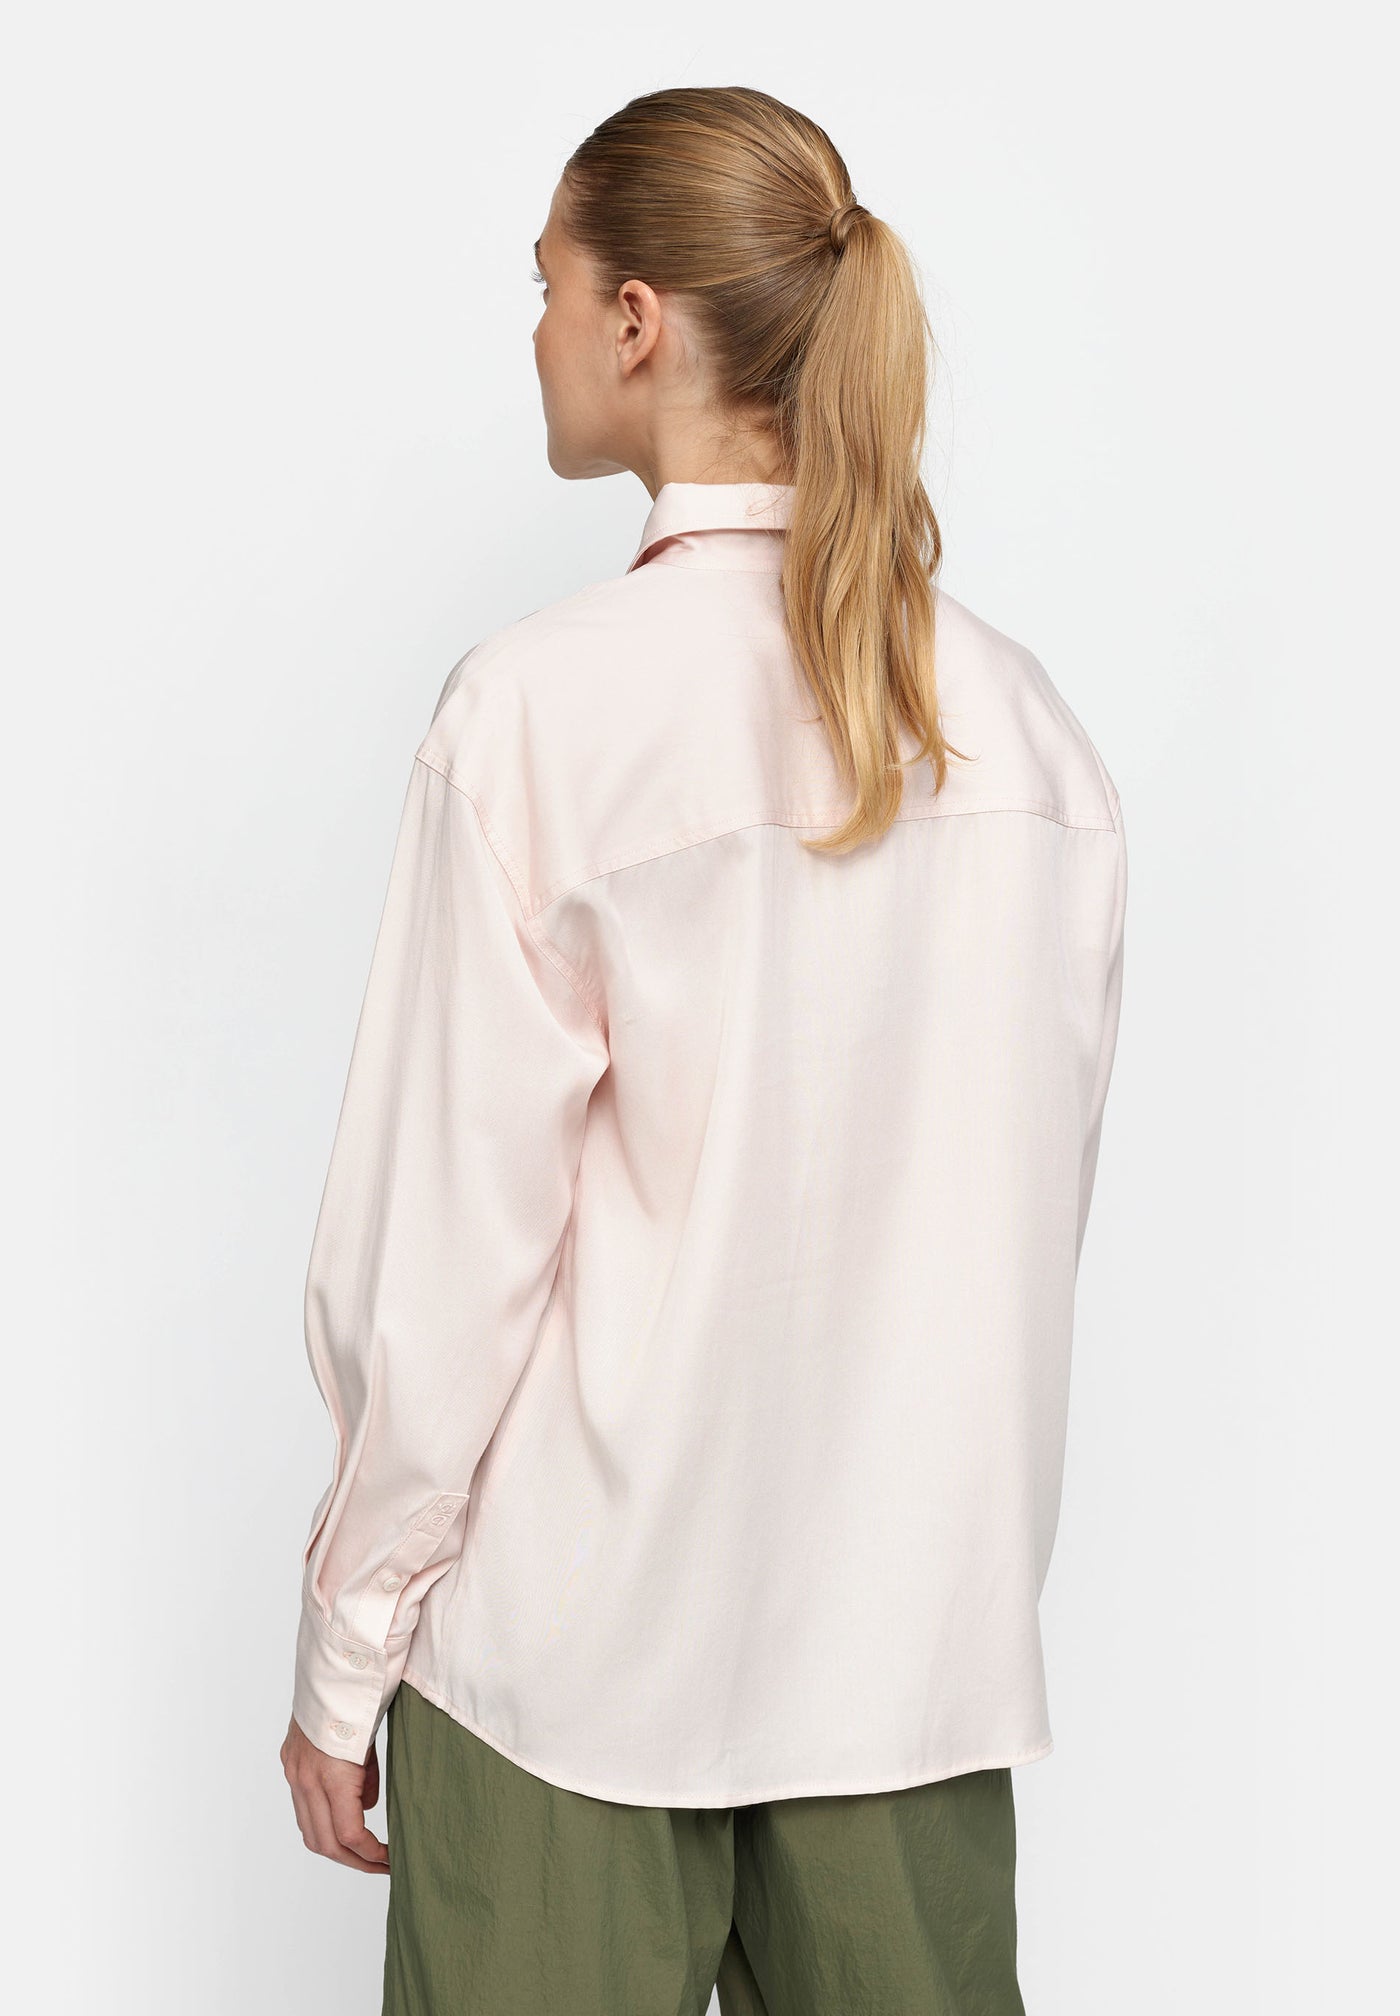 esmé studios ESIvy Shirt Shirts & Blouse 241 Cloud Pink